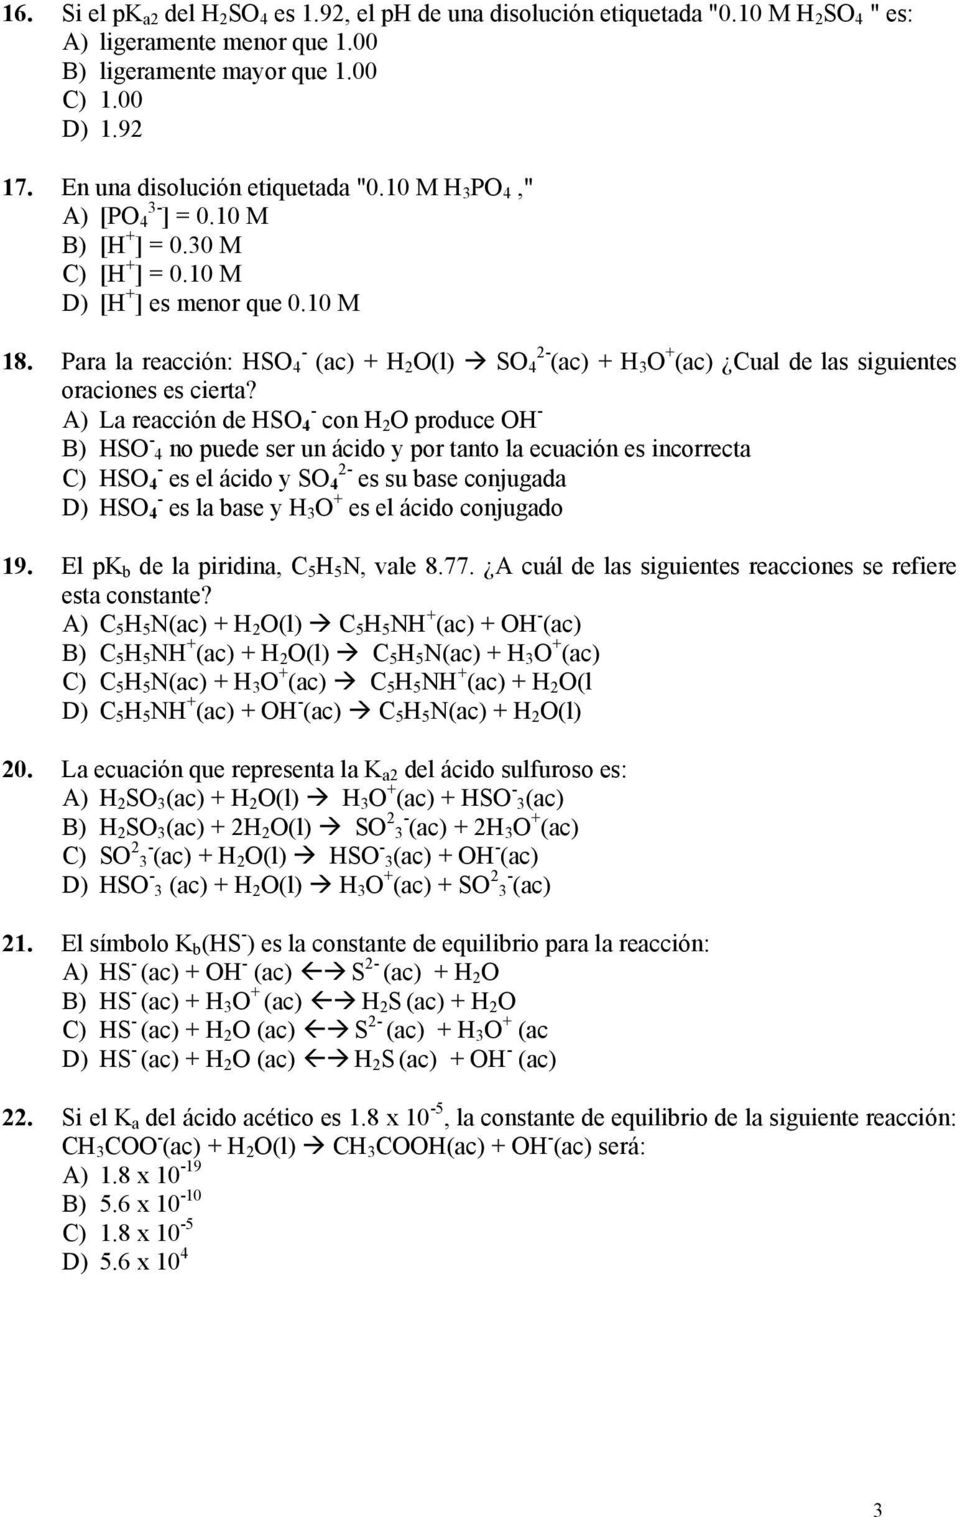 Para la reacción: HSO 4 - (ac) + H 2 O(l) SO 4 2- (ac) + H 3 O + (ac) Cual de las siguientes oraciones es cierta?